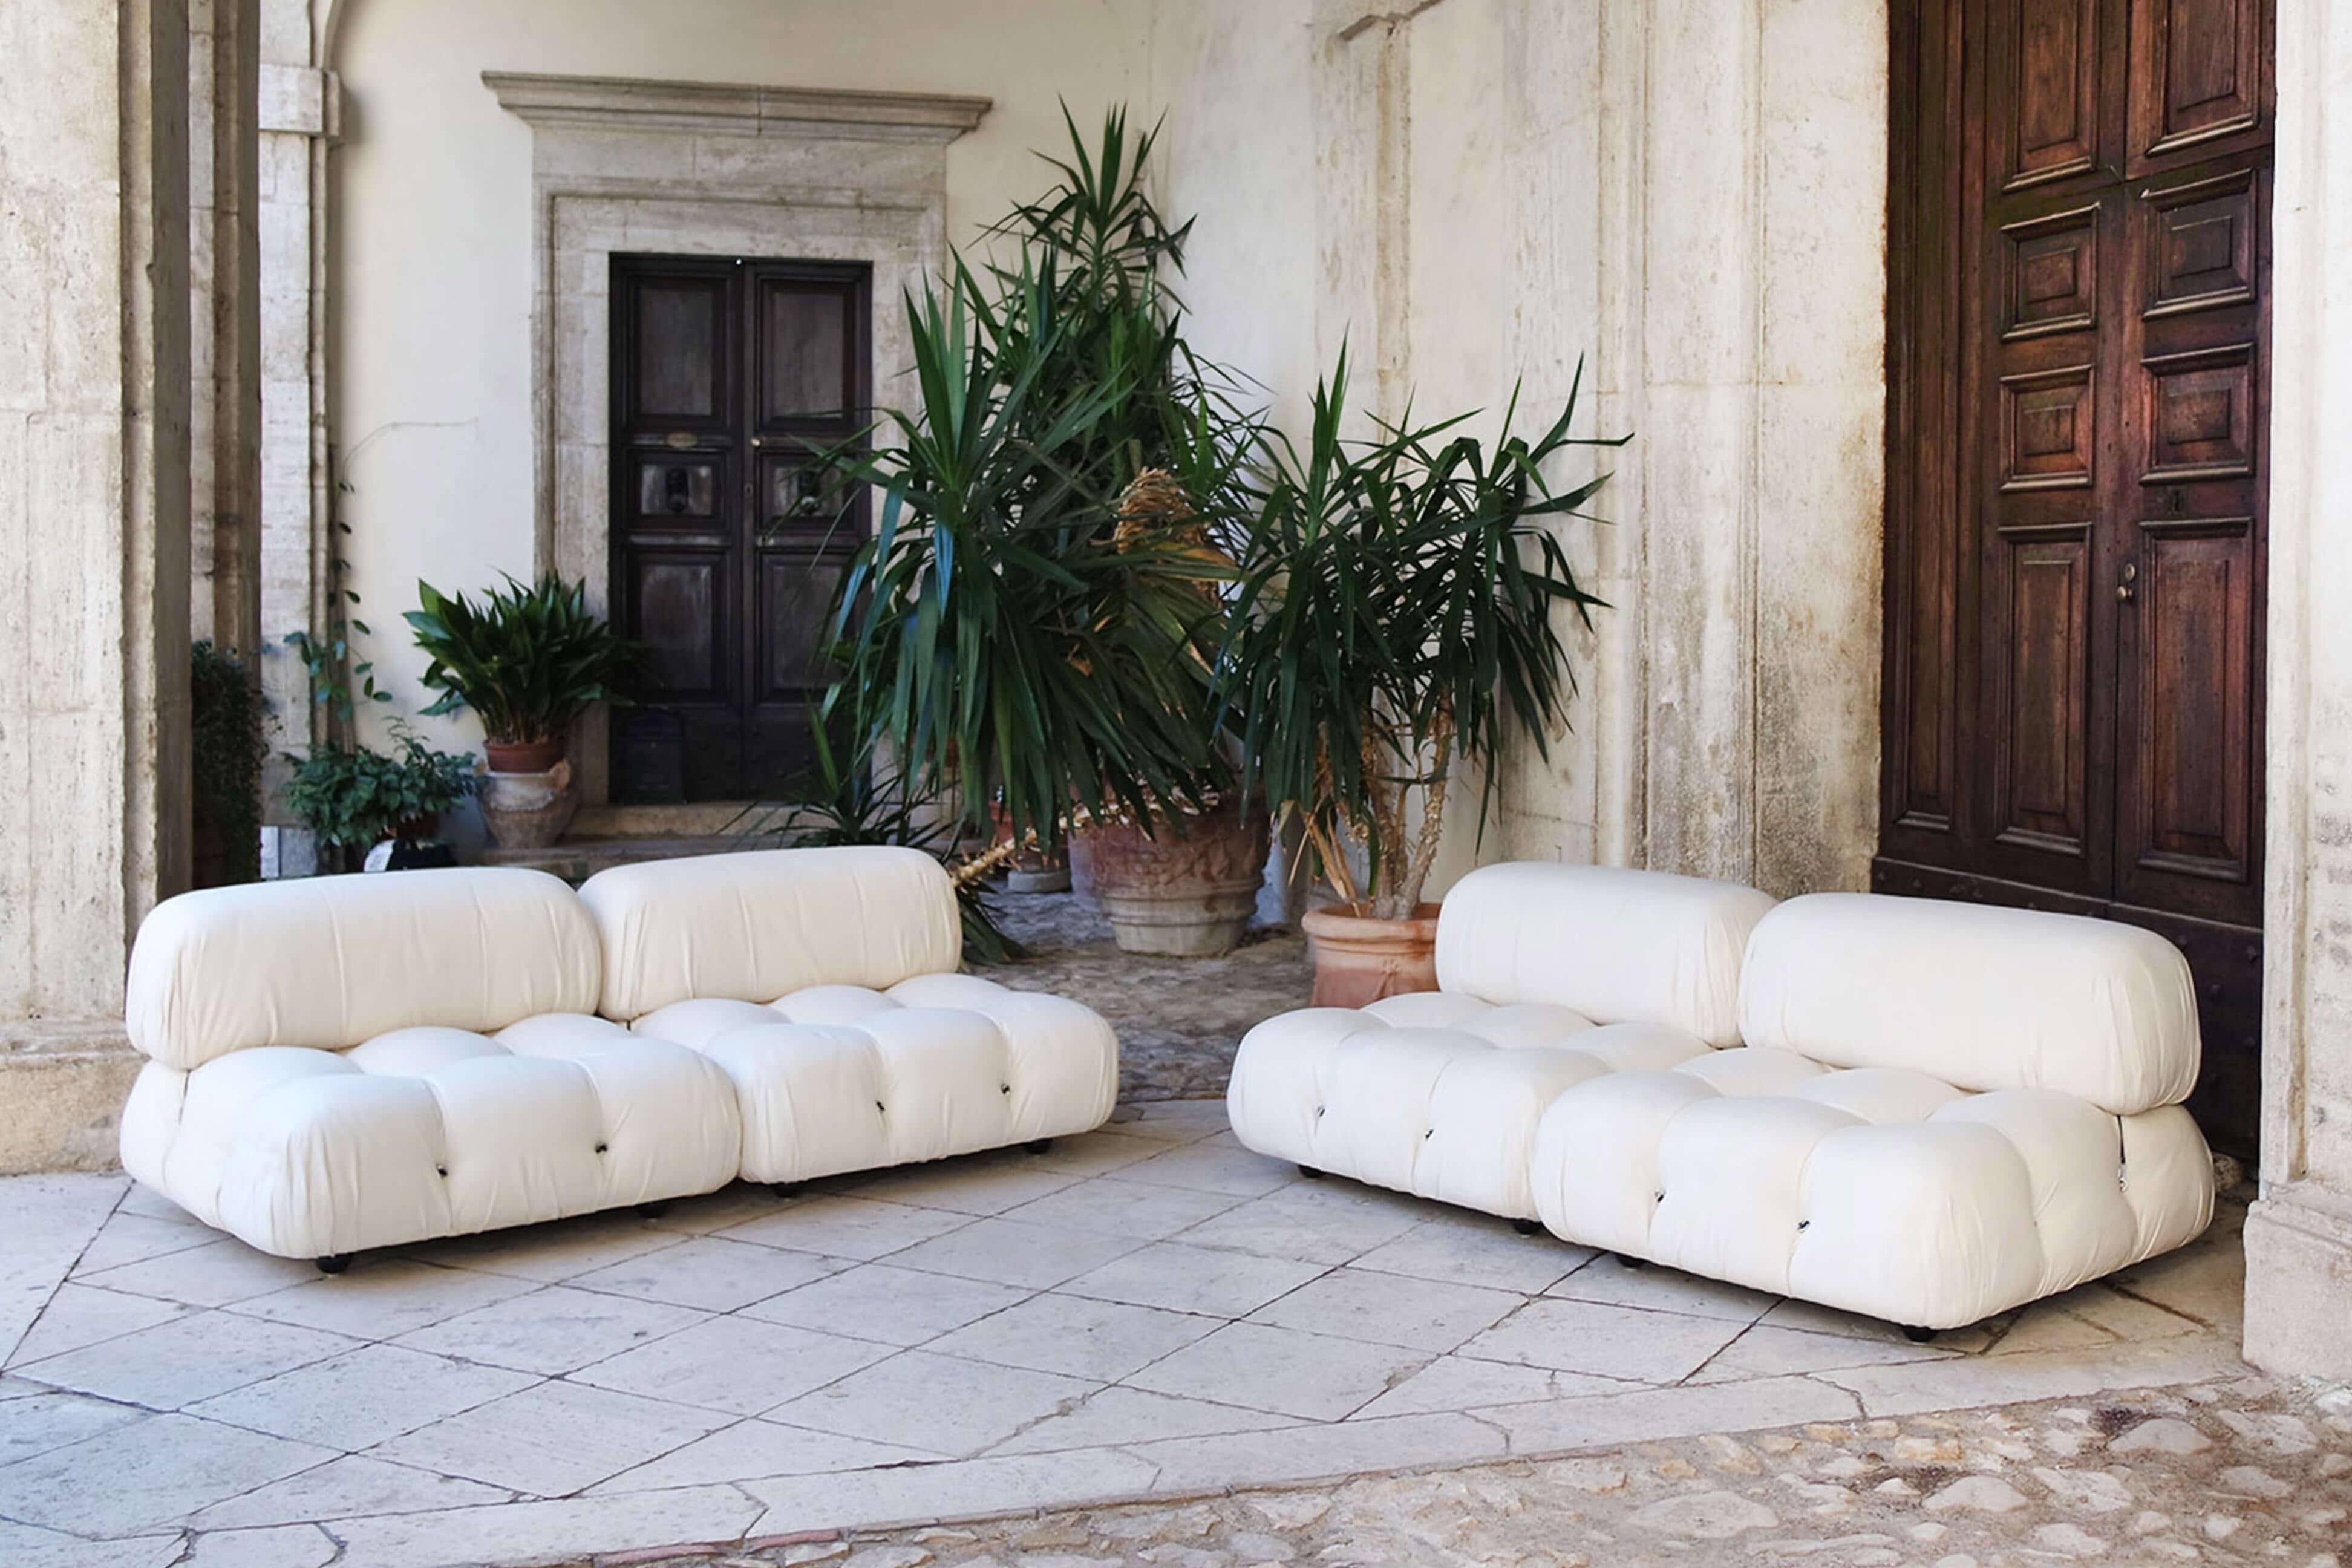 Ein schönes Exemplar eines originalen Camaleonda-Sofas aus den 1970er Jahren, entworfen von Mario Bellini für B&B Italia in den 1970er Jahren. Dieses ikonische Designerstück ist mit dem originalen dicken cremefarbenen Baumwollstoff überzogen. Es